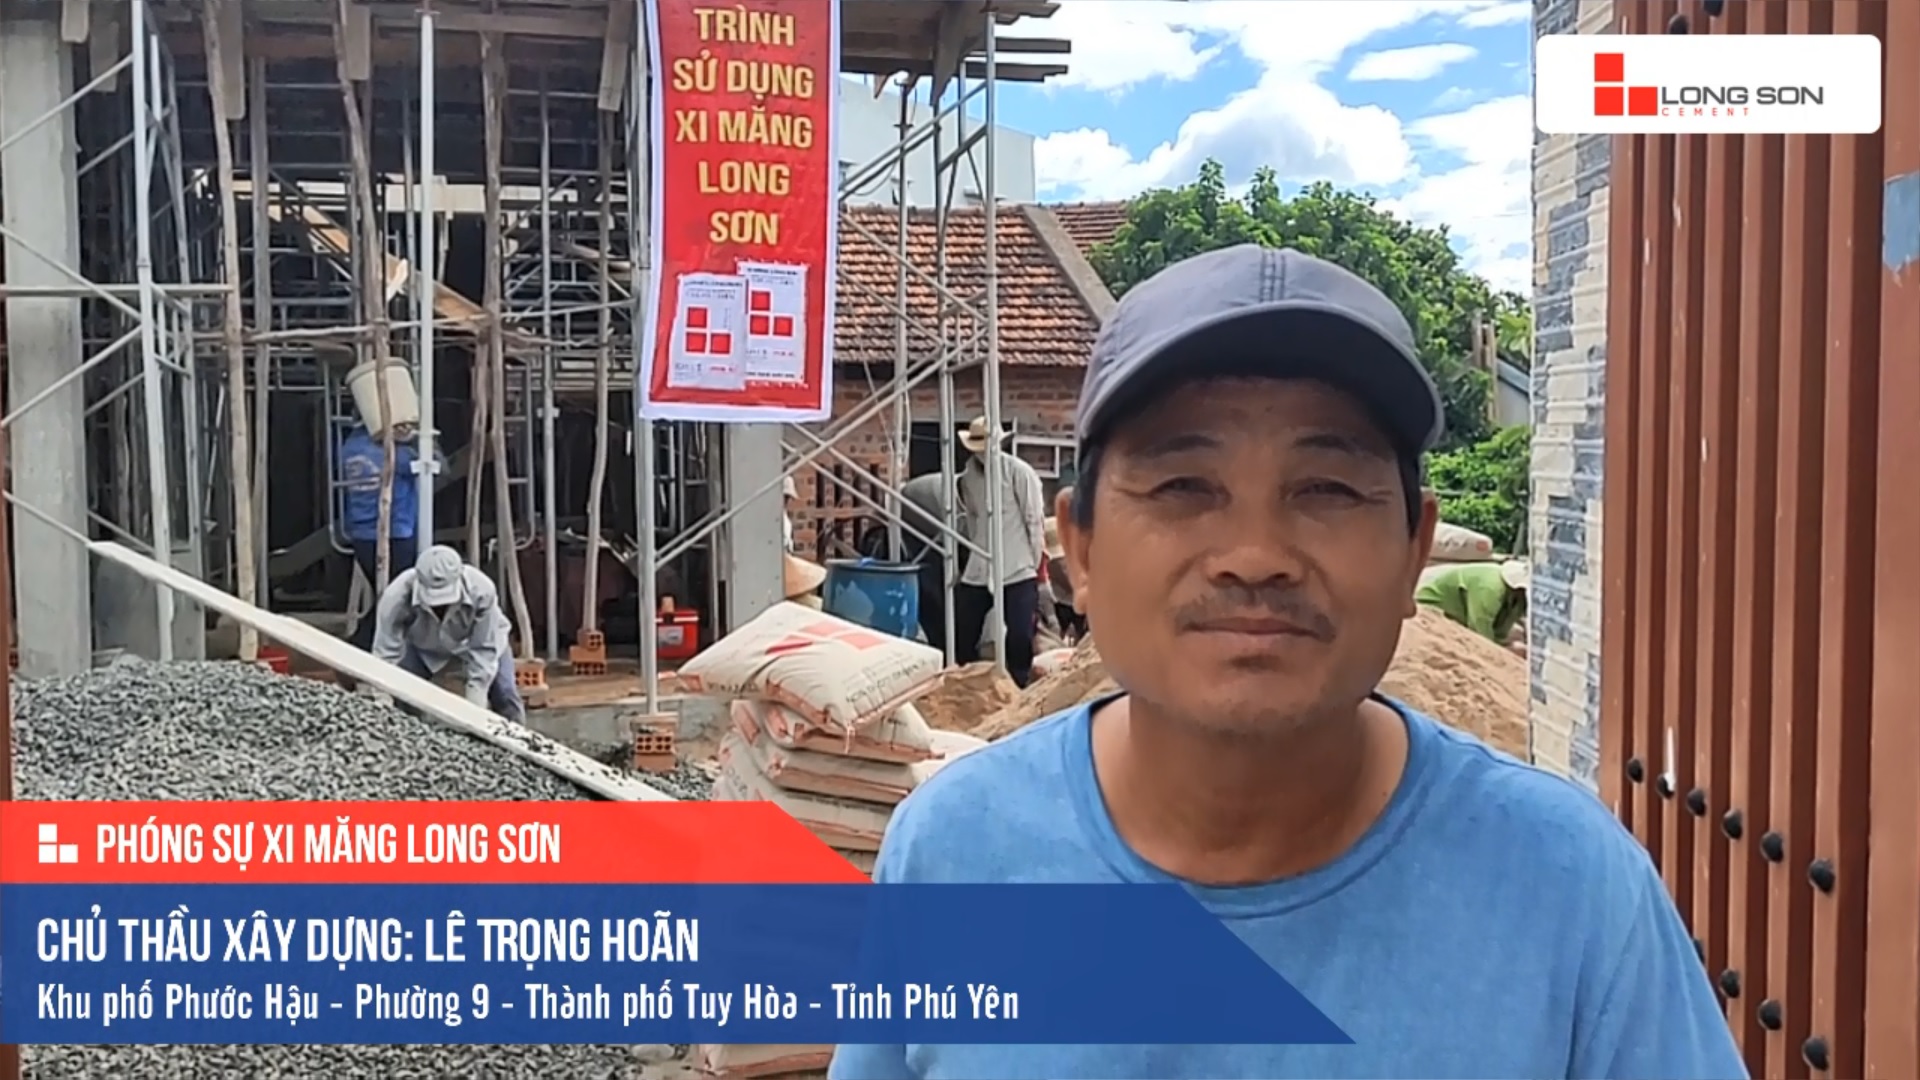 Phóng sự công trình sử dụng Xi măng Long Sơn ở Phú Yên 04.09.2019